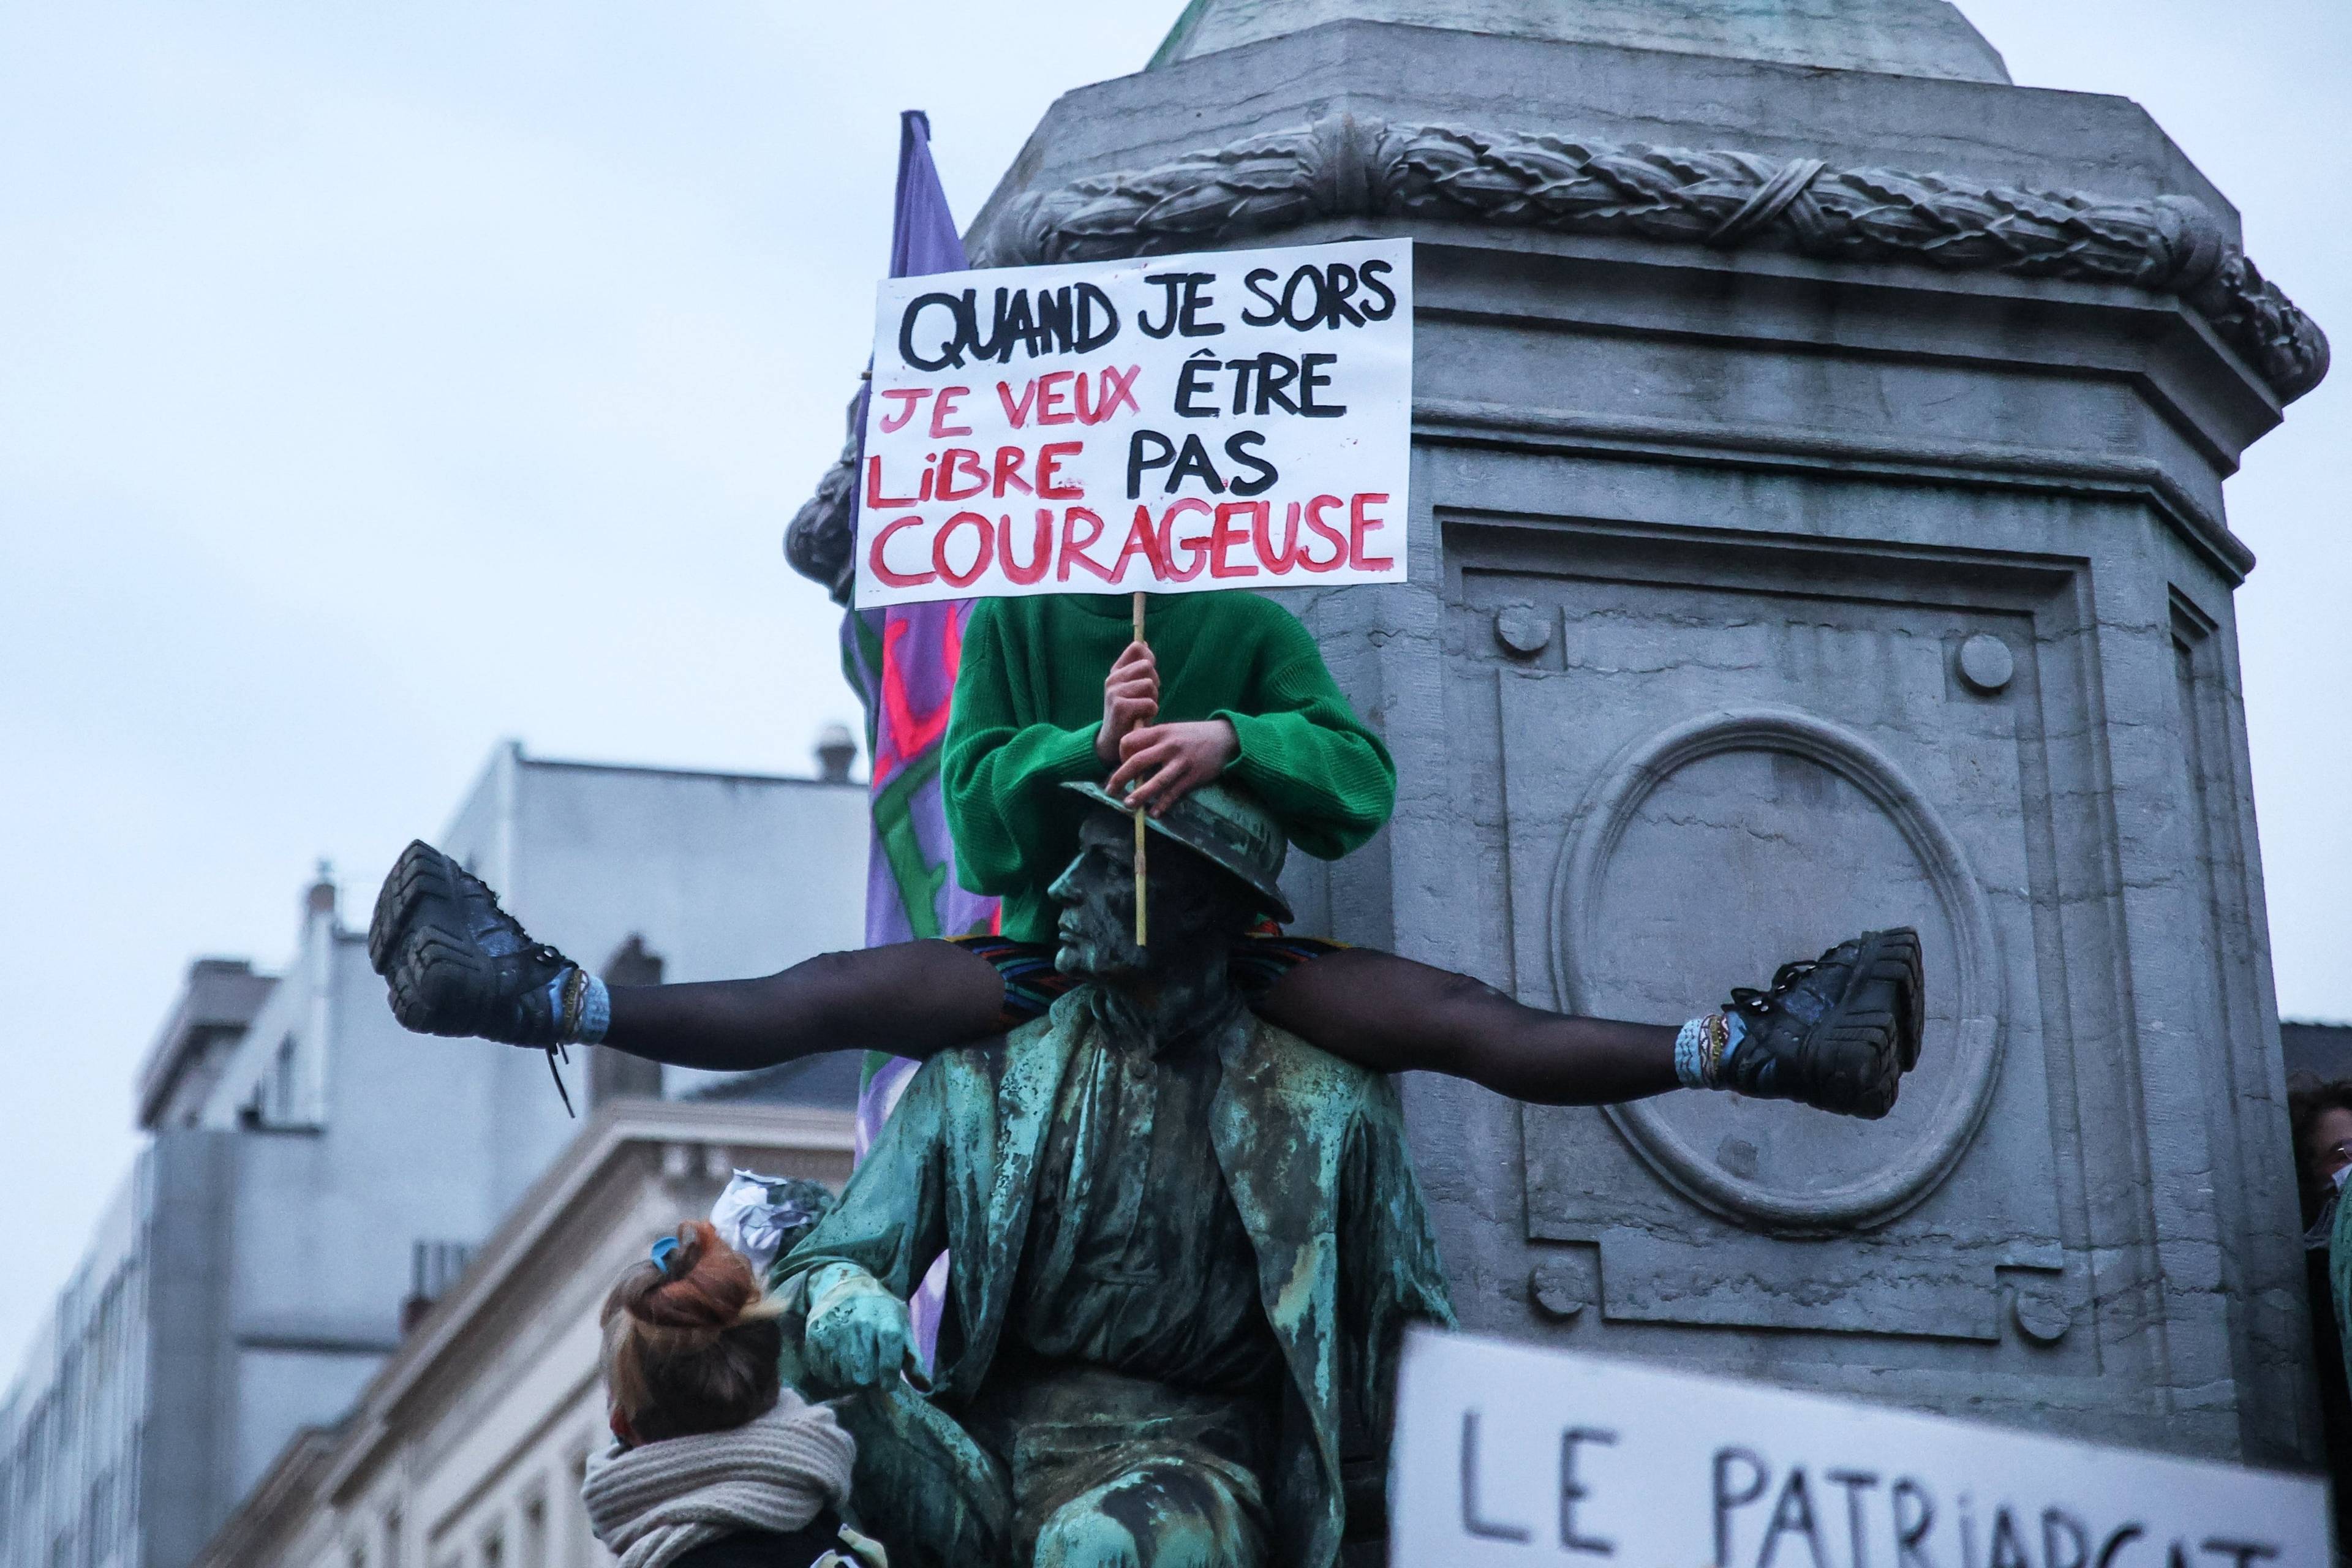 Aktywistka trzyma transparent po francusku "Kiedy wychodzę z domu, chcę być wolna a nie odważna"